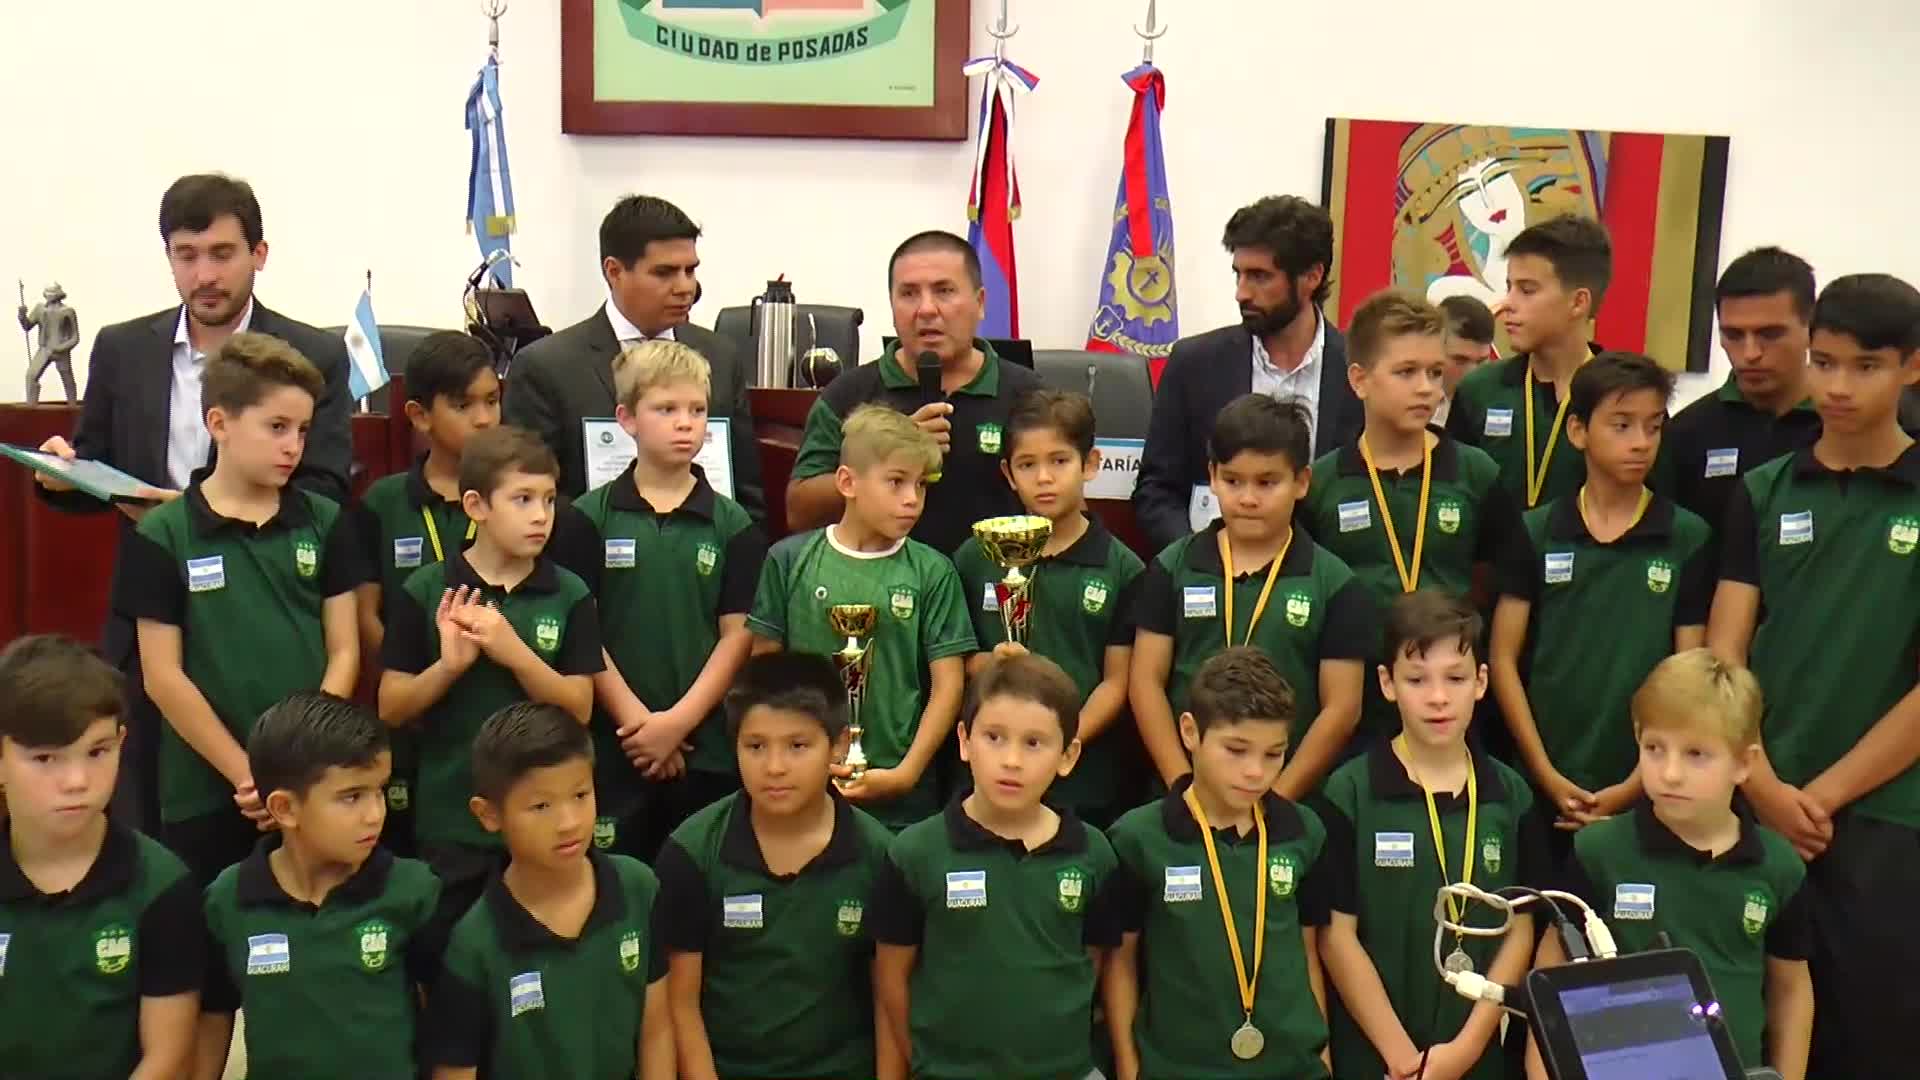 Declaran jóvenes destacados a "Los Indiecitos Misioneros", campeones de fútbol infantil en España